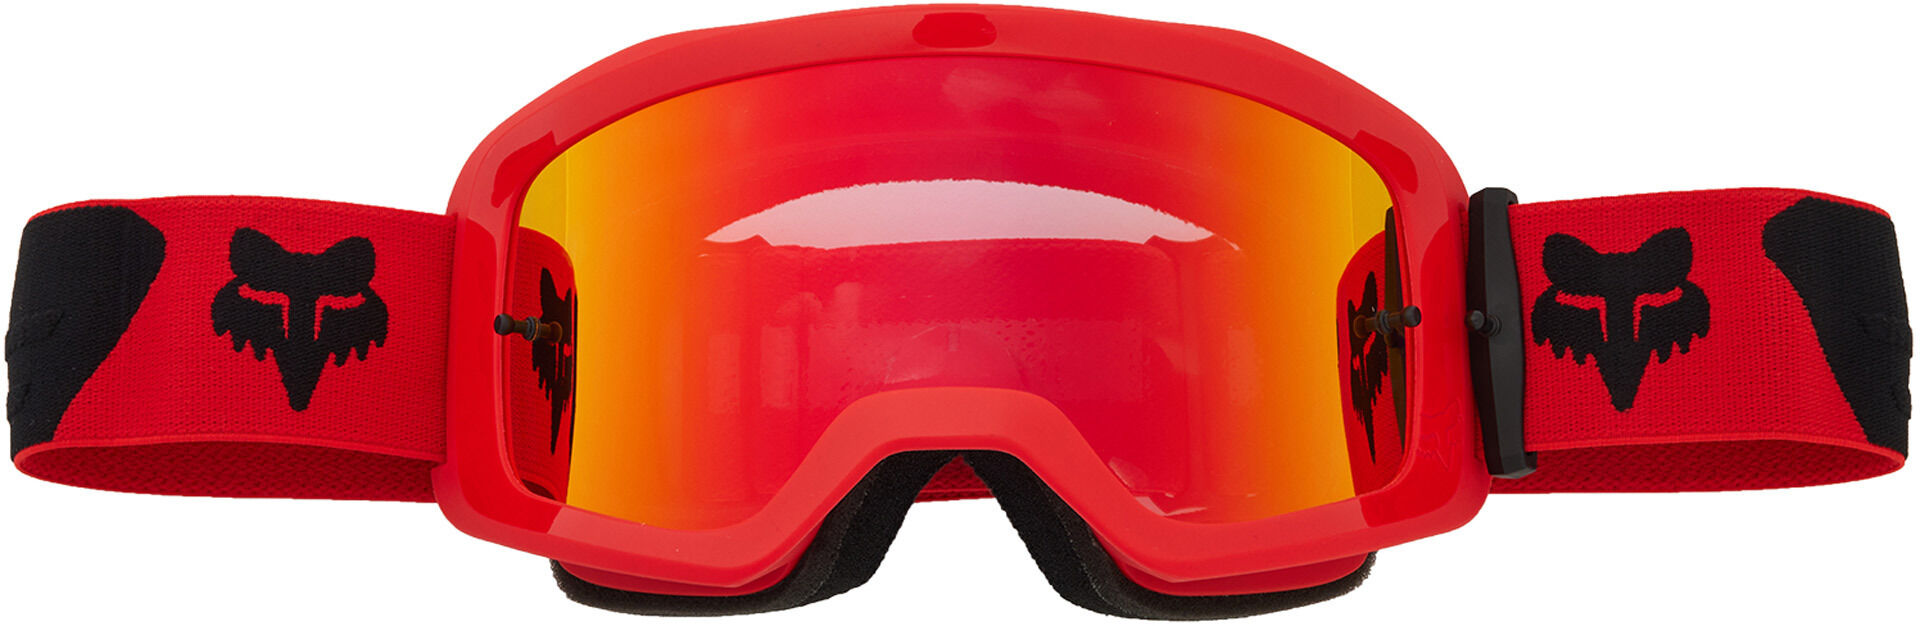 Fox Main Core Spark Gafas de motocross - Negro Rojo (un tamaño)